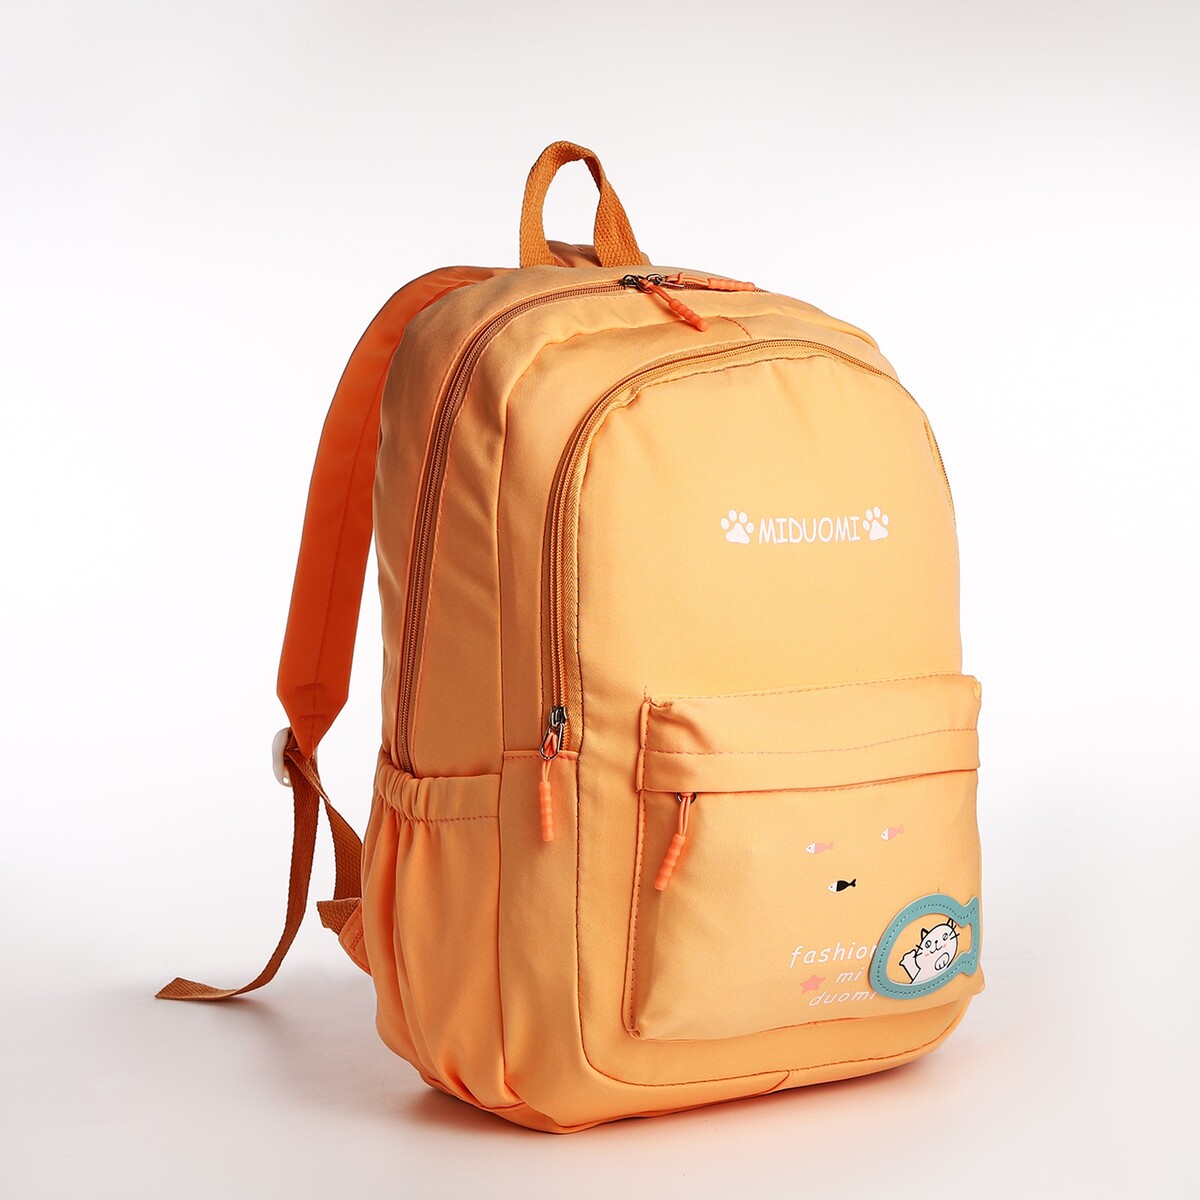 Рюкзак школьный из текстиля 2 отдела на молнии, 3 кармана, цвет оранжевый